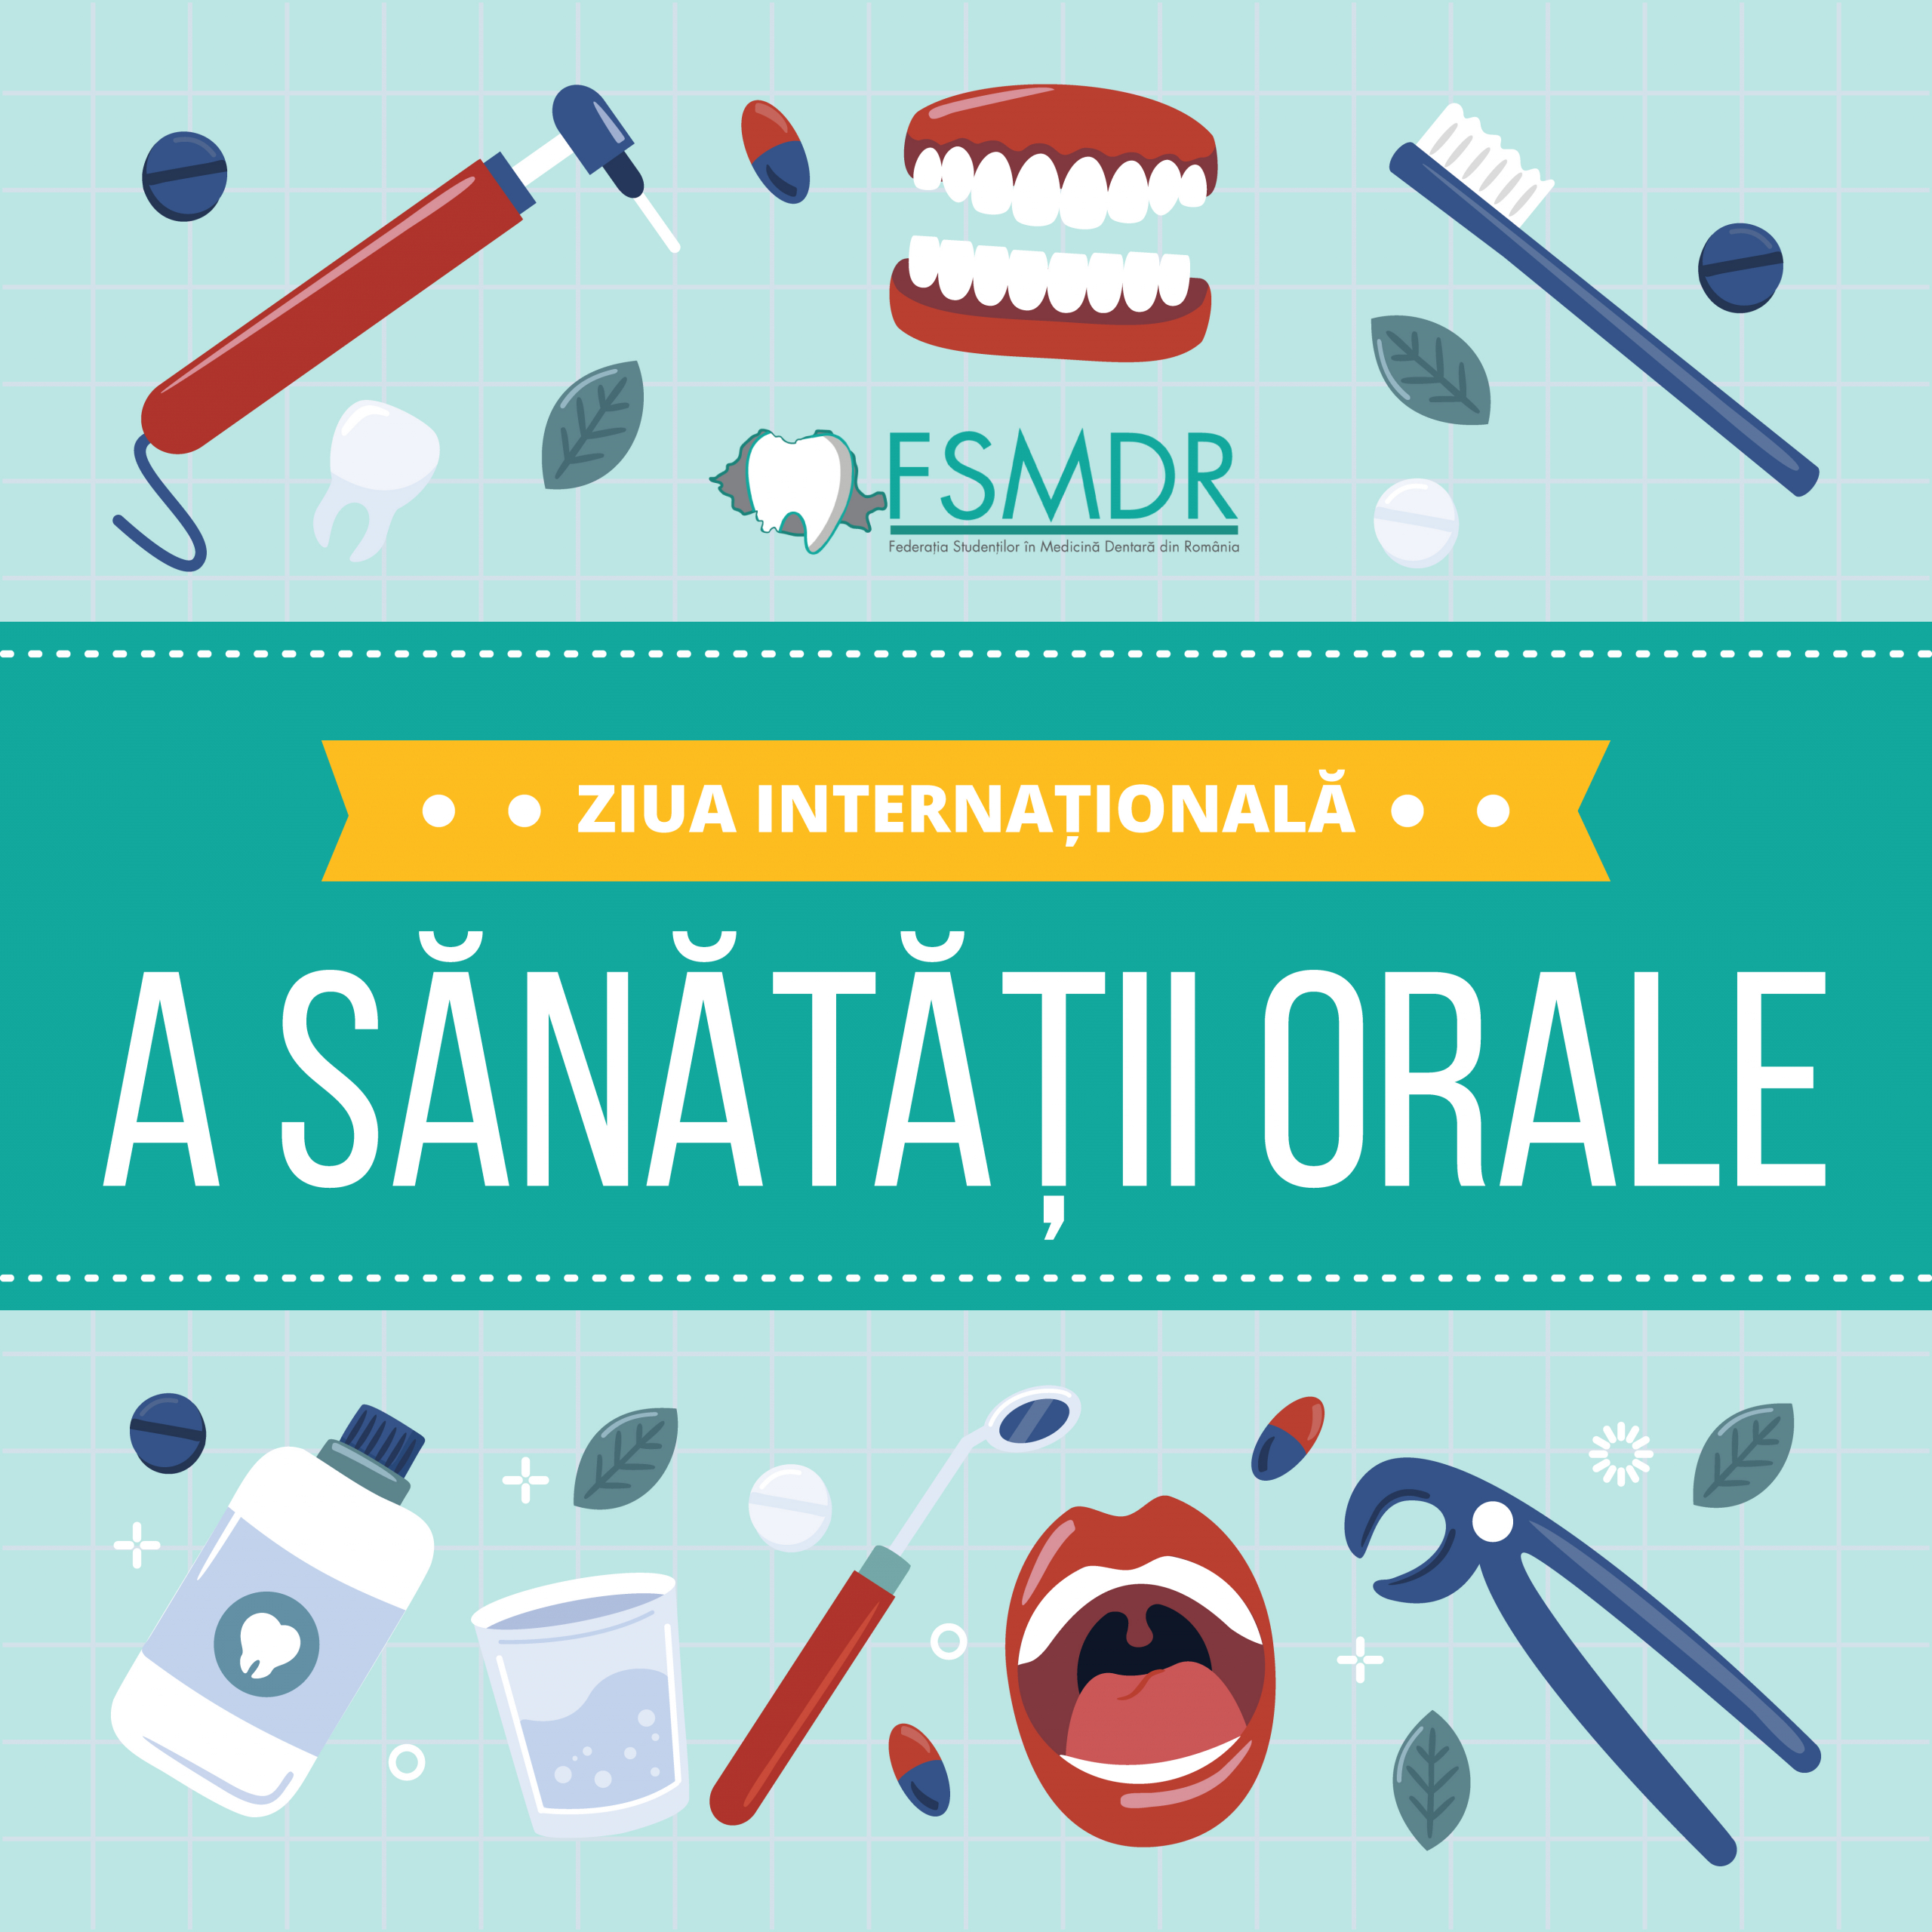 Ziua Internațională a Sănătății Orale